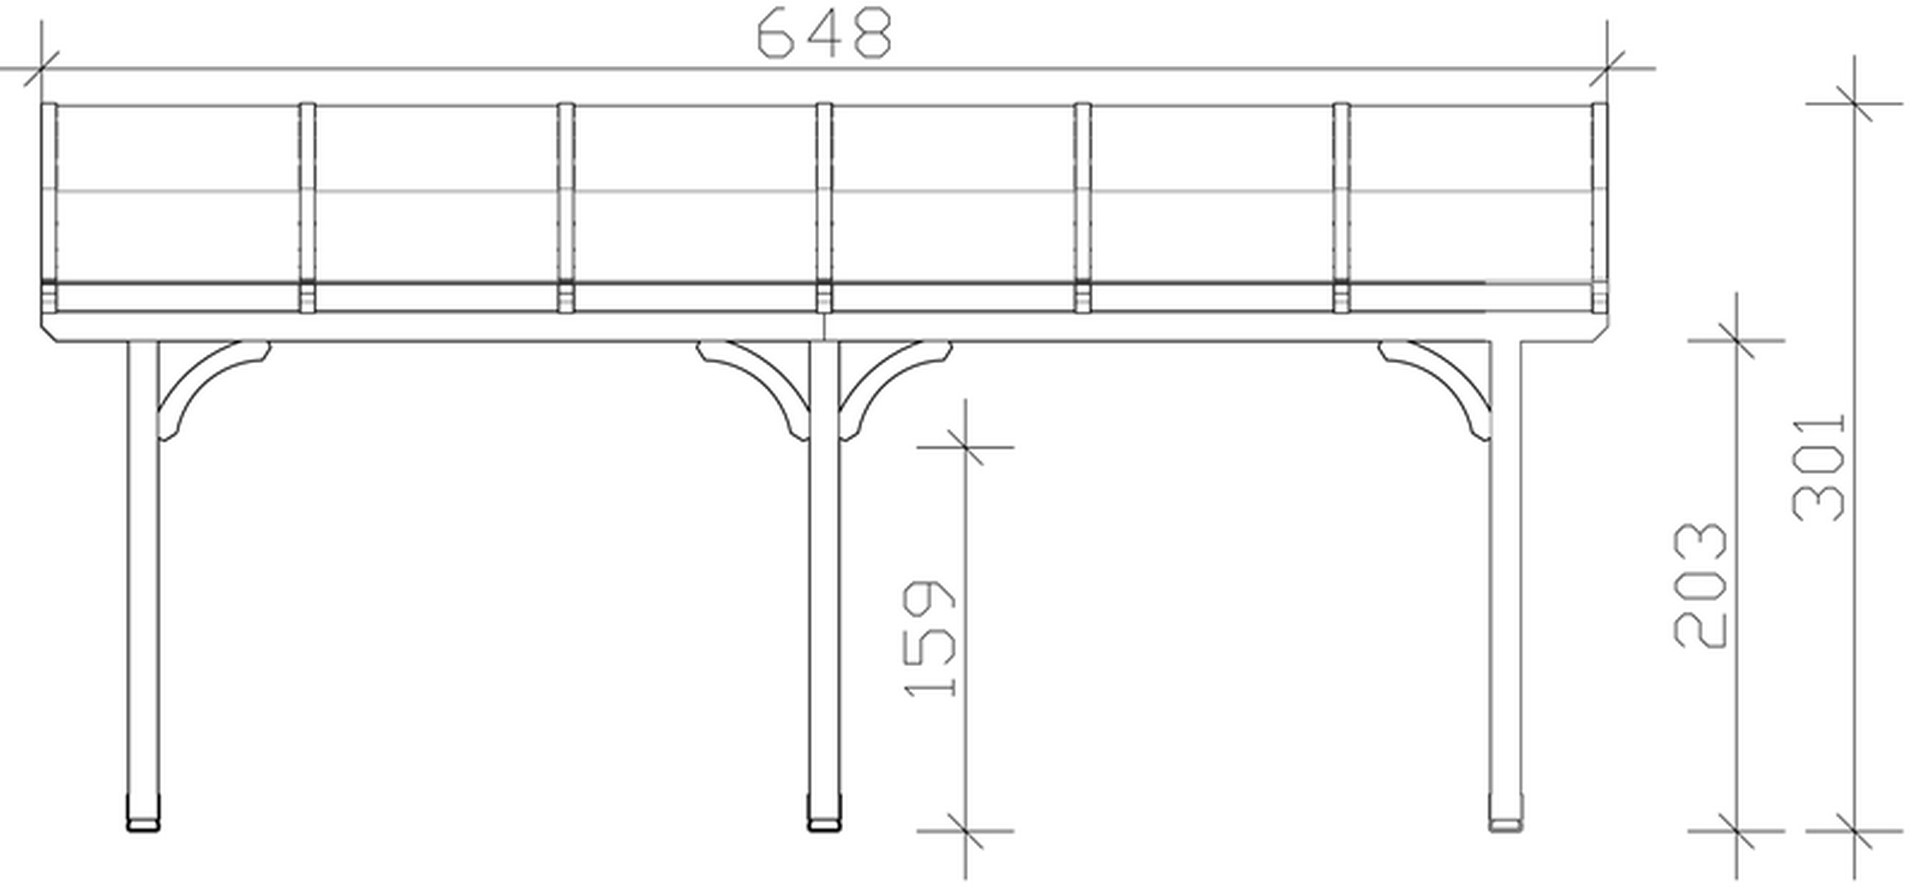 Skan Holz Terrassenüberdachung Venezia 648 x 339 cm, Leimholz, Doppelstegplatten